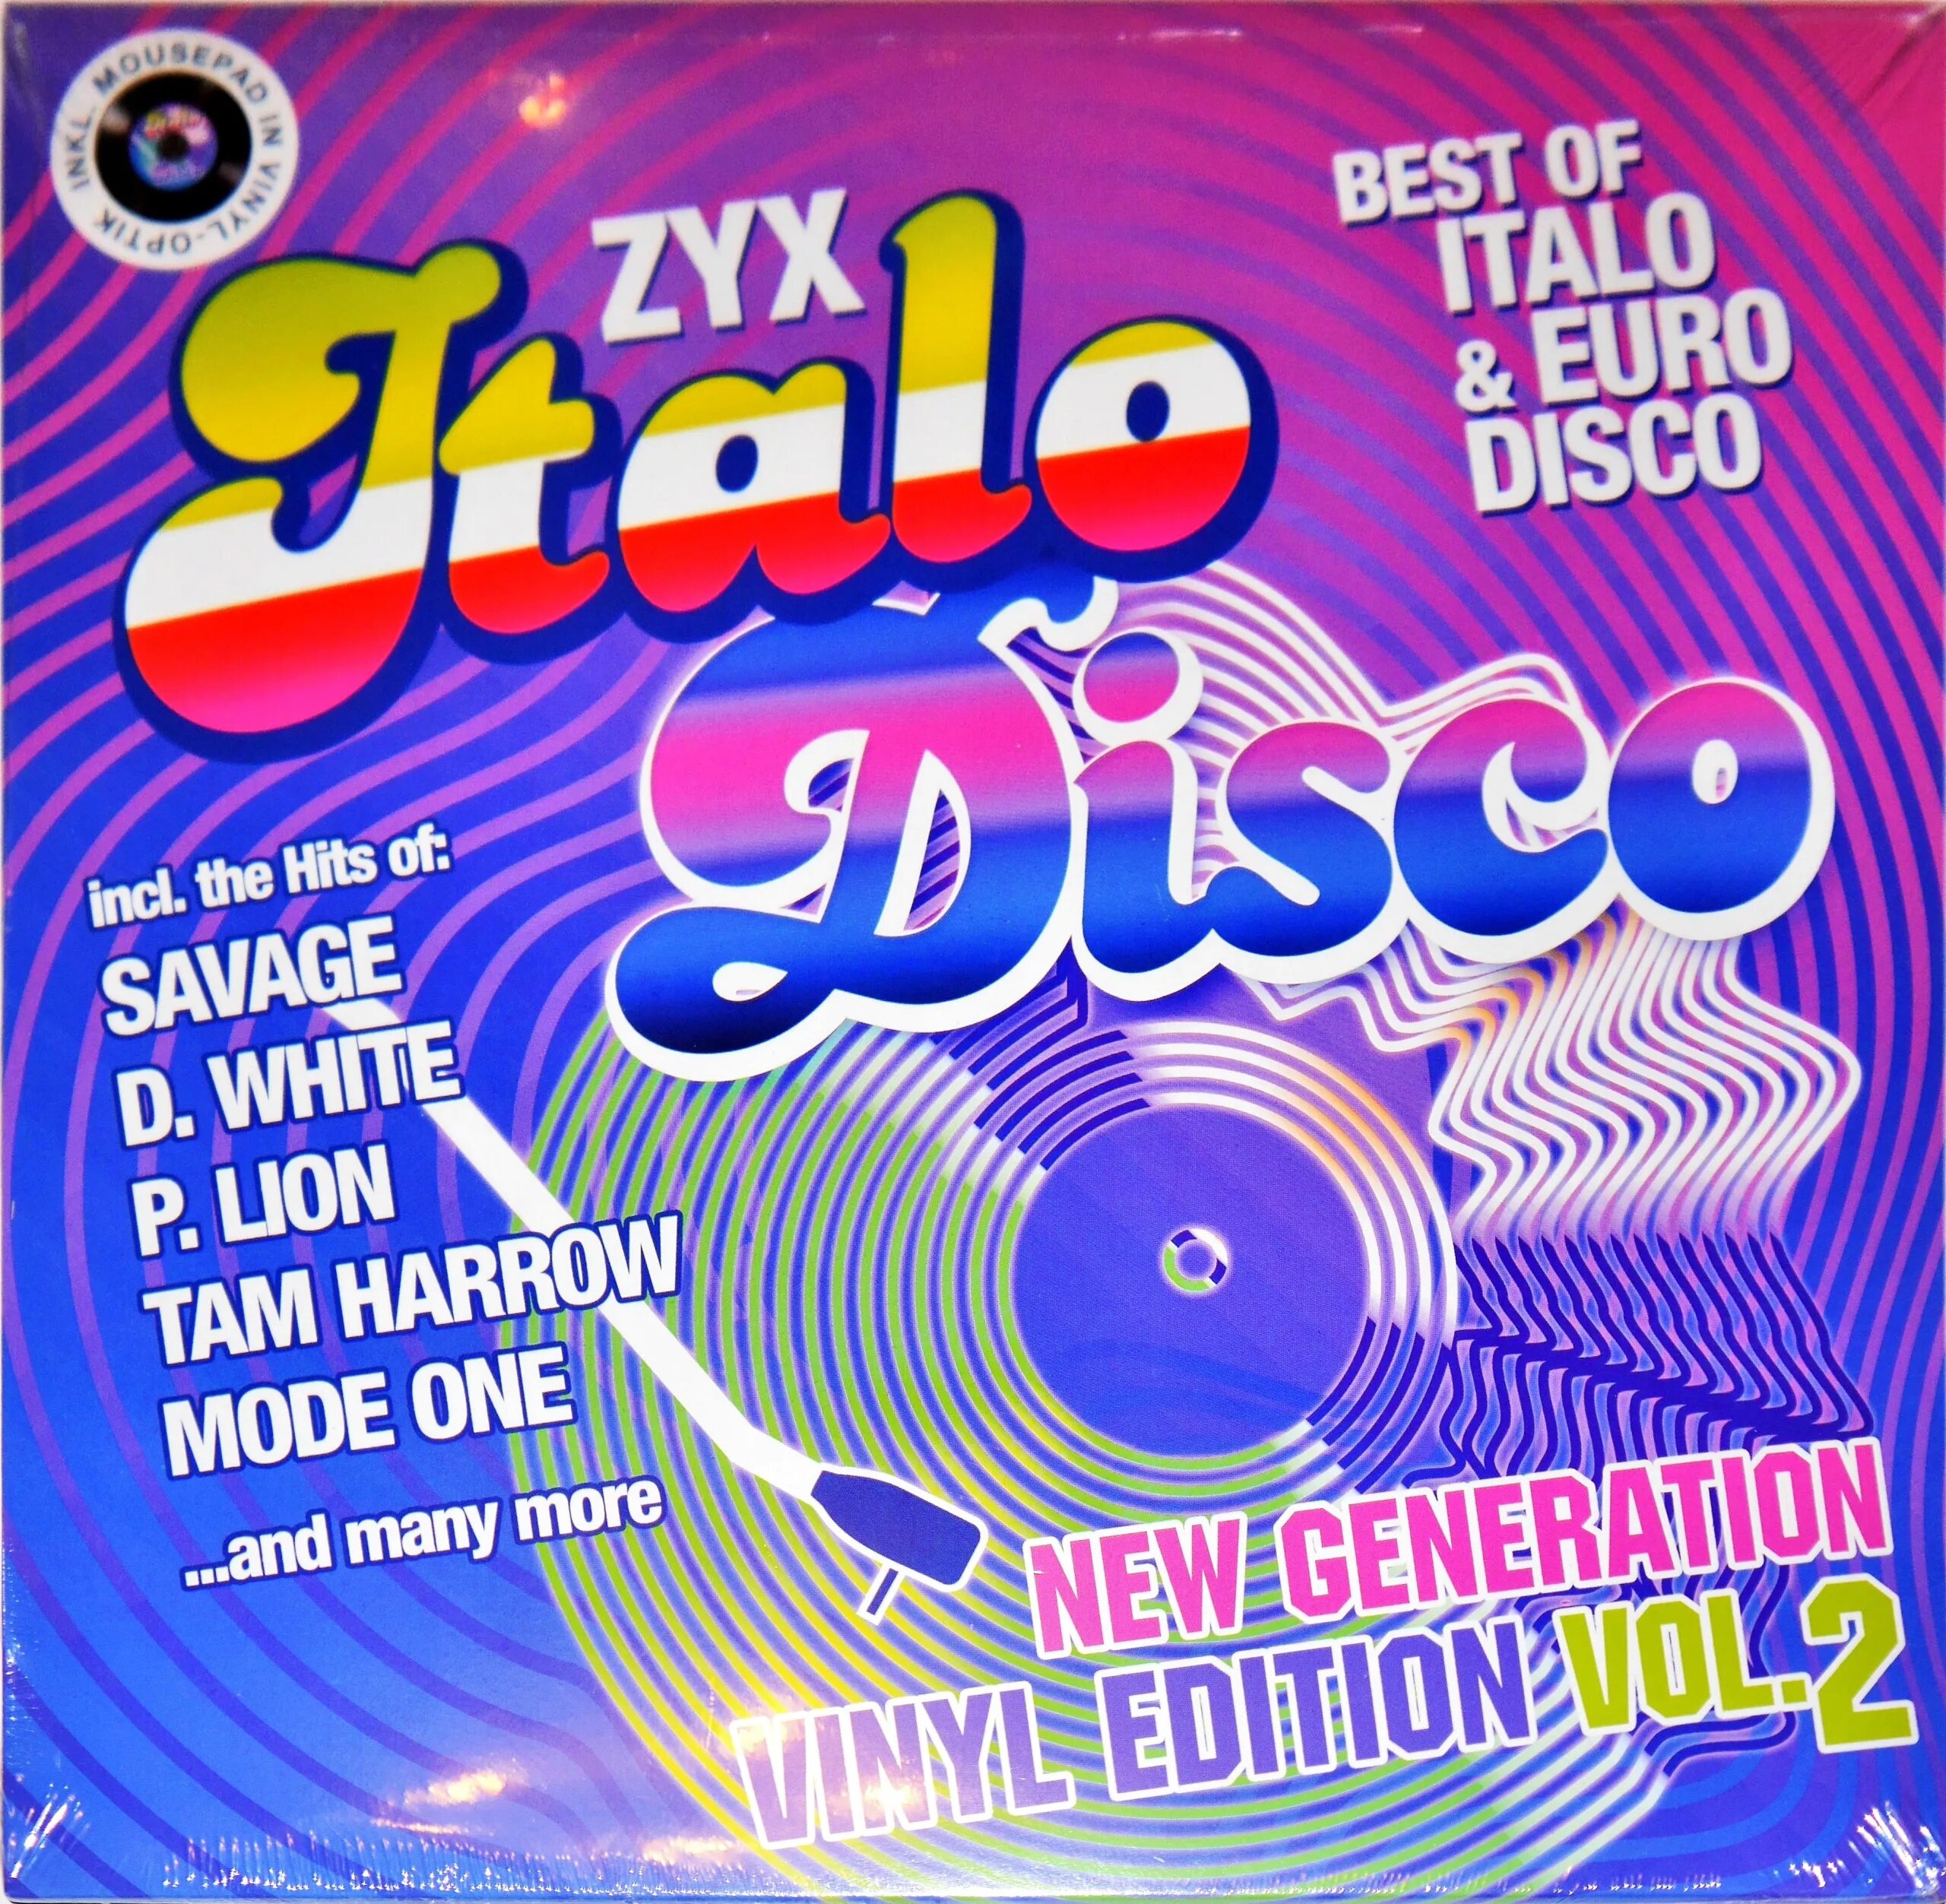 New disco hits. ZYX Italo Disco New Generation Vinyl Edition Vol.5. ZYX Italo Disco New Generation Vol 20. ZYX Italo Disco Hits. ZYX Italo Disco New Generation.